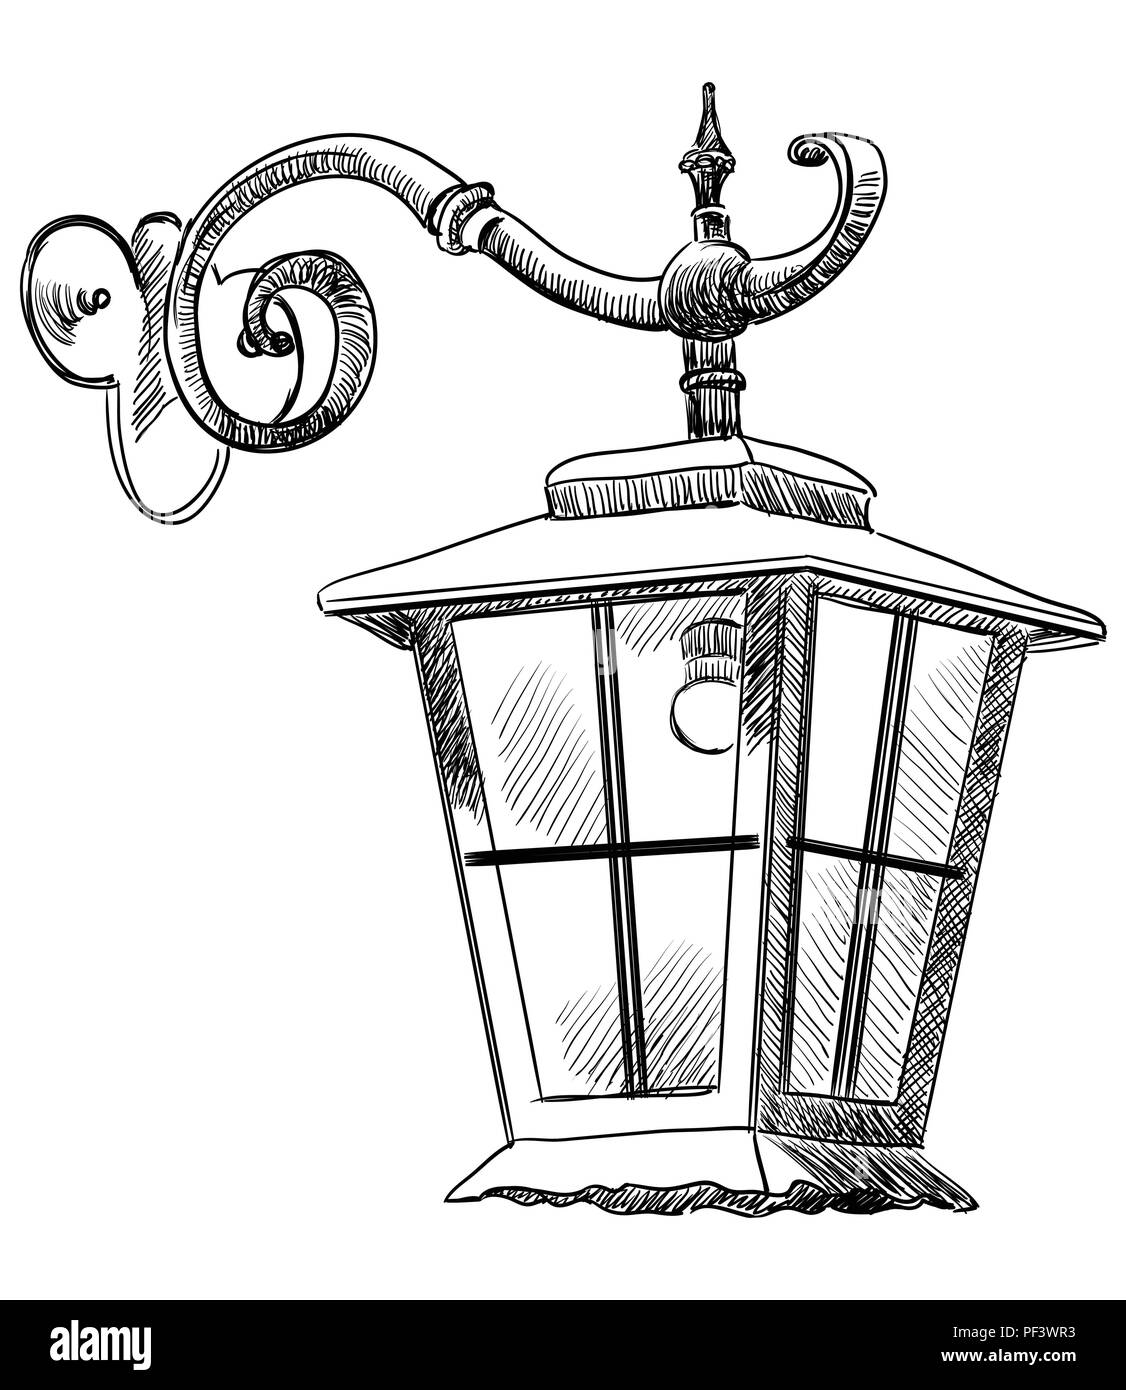 Lanterne suspendue Banque d'images noir et blanc - Alamy